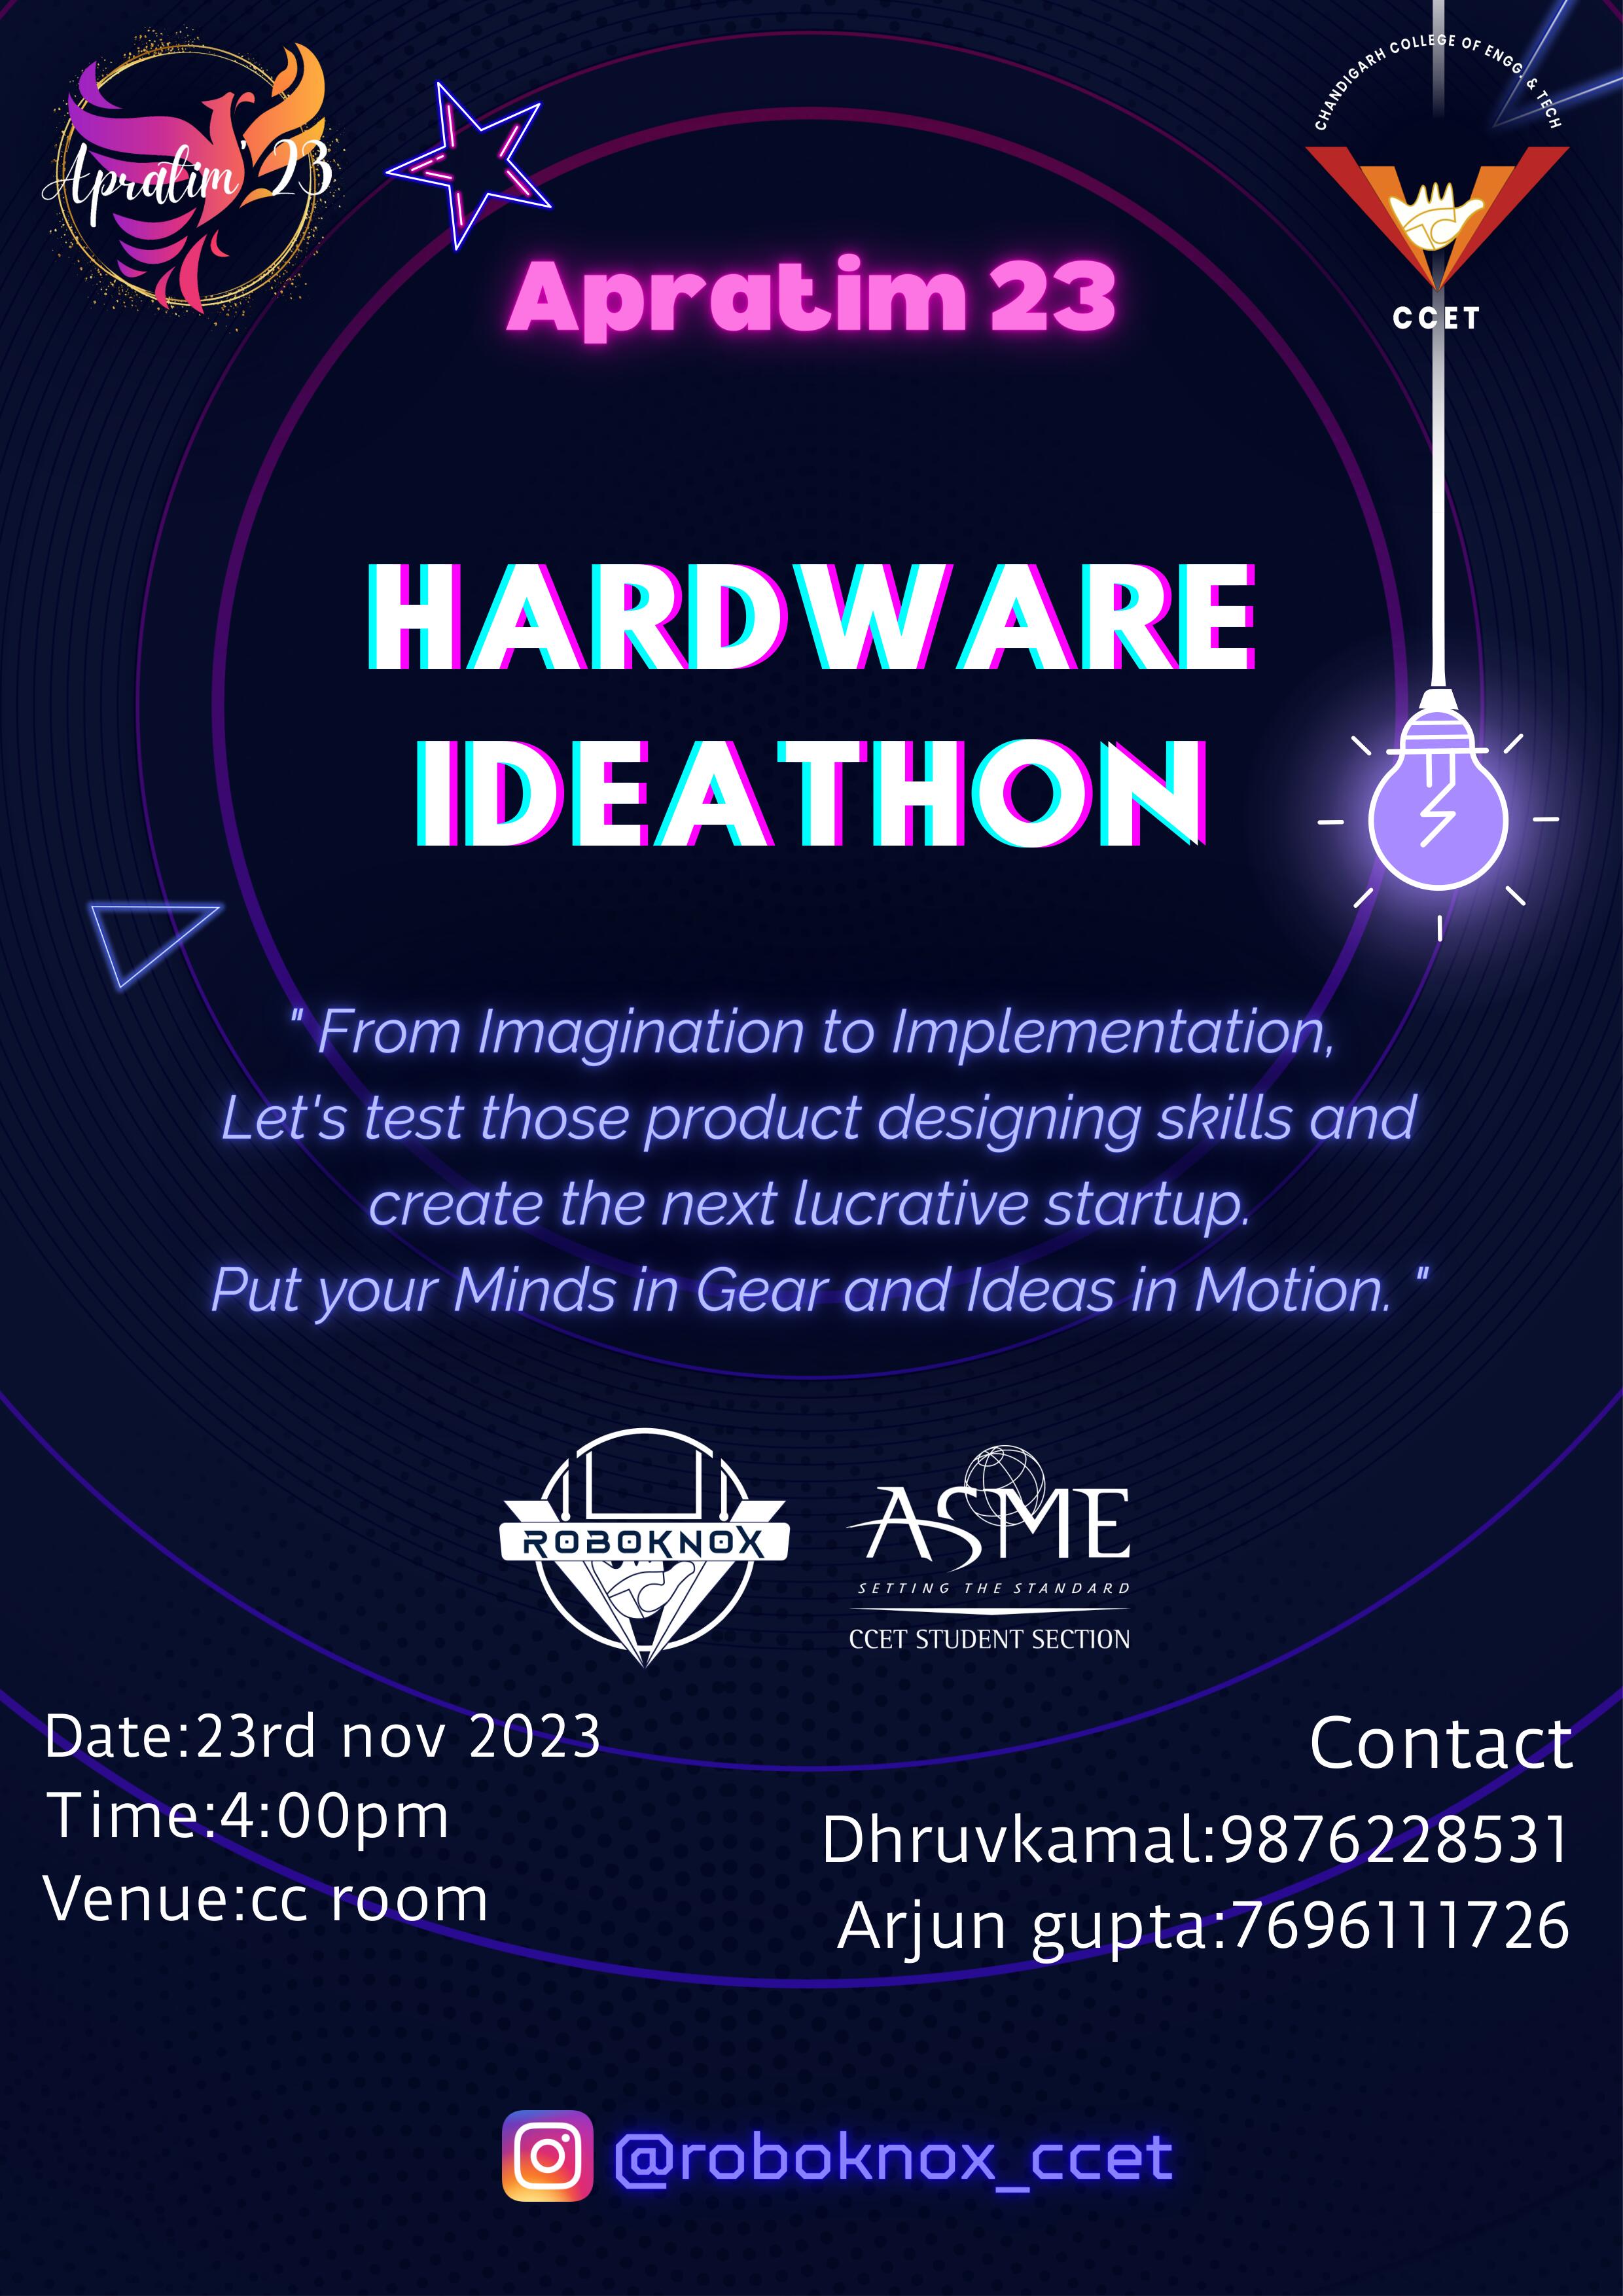 Hardware ideathon